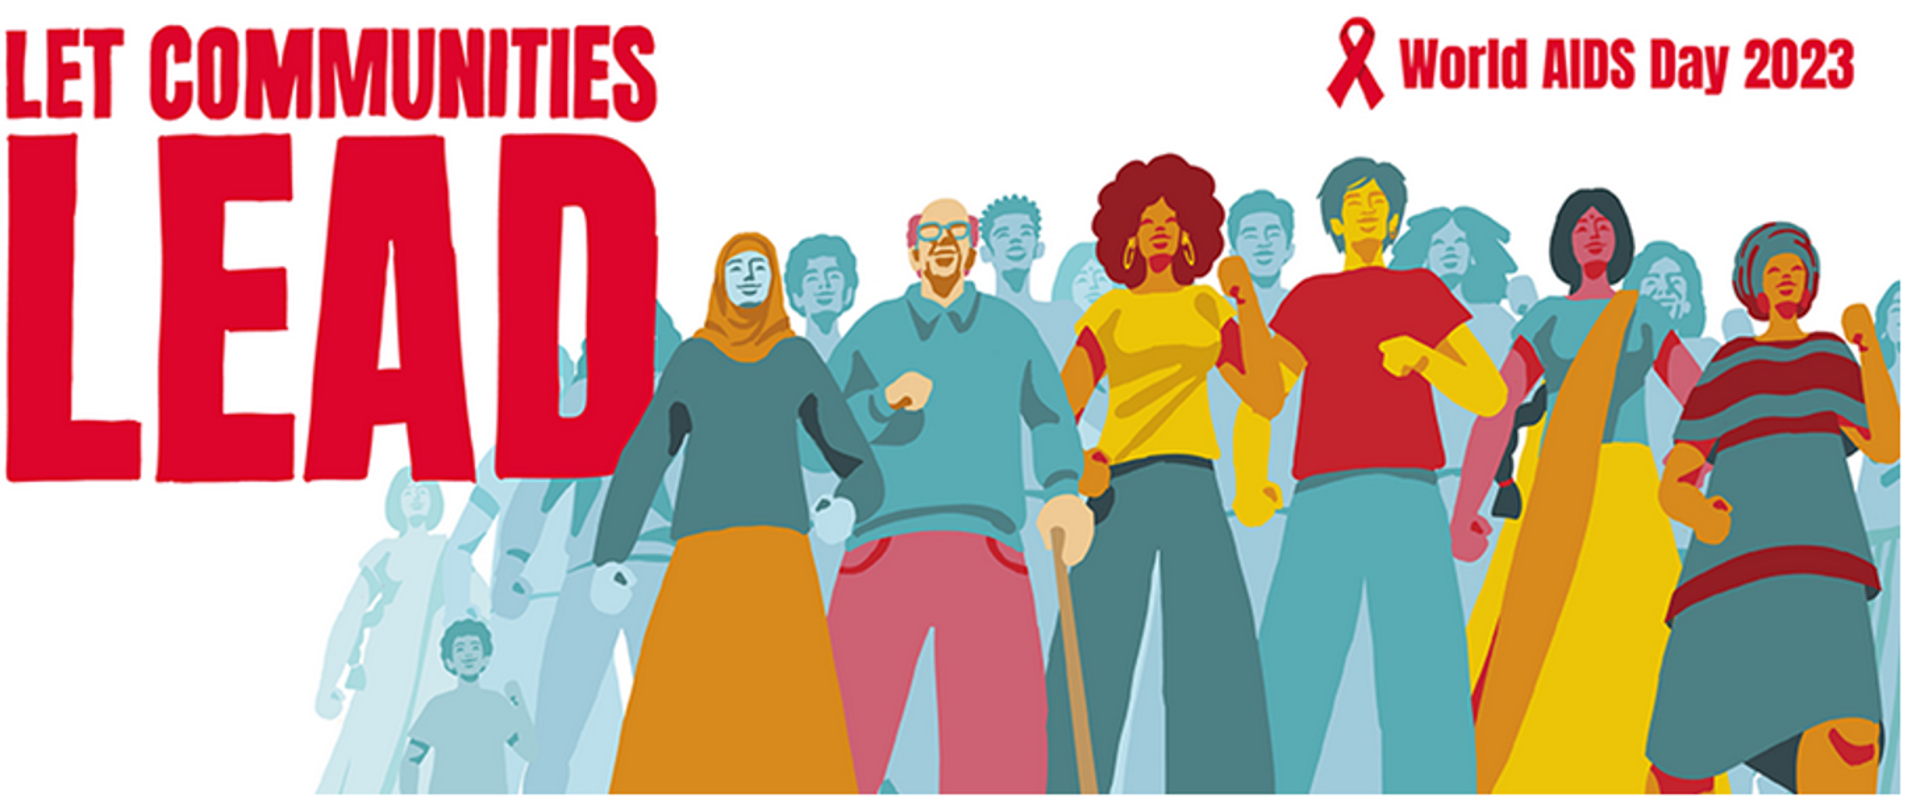 Baner z napisem po lewej LET COMMUNITIES LEAD, po prawej grupa idących ludzi nad nimi czerwona wstążka i napis World AIDS Day 2023